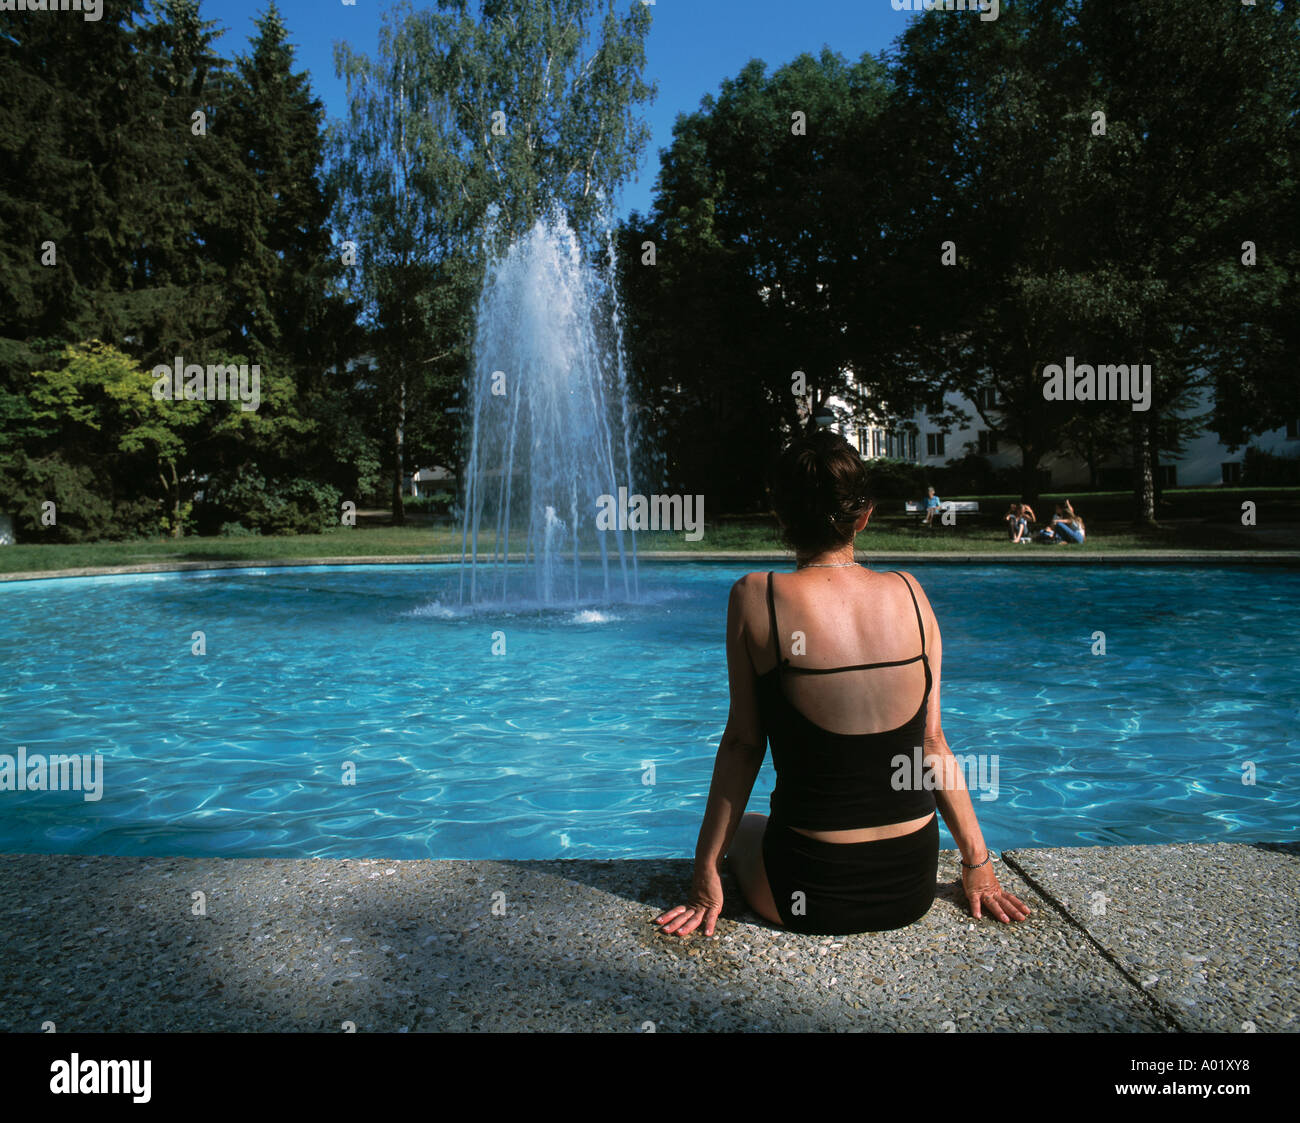 D-Bad Abbach, il Danubio, Baviera, i giardini del centro termale, giovane donna che indossa il costume da bagno seduti a un laghetto, lago, molla, fontana Foto Stock